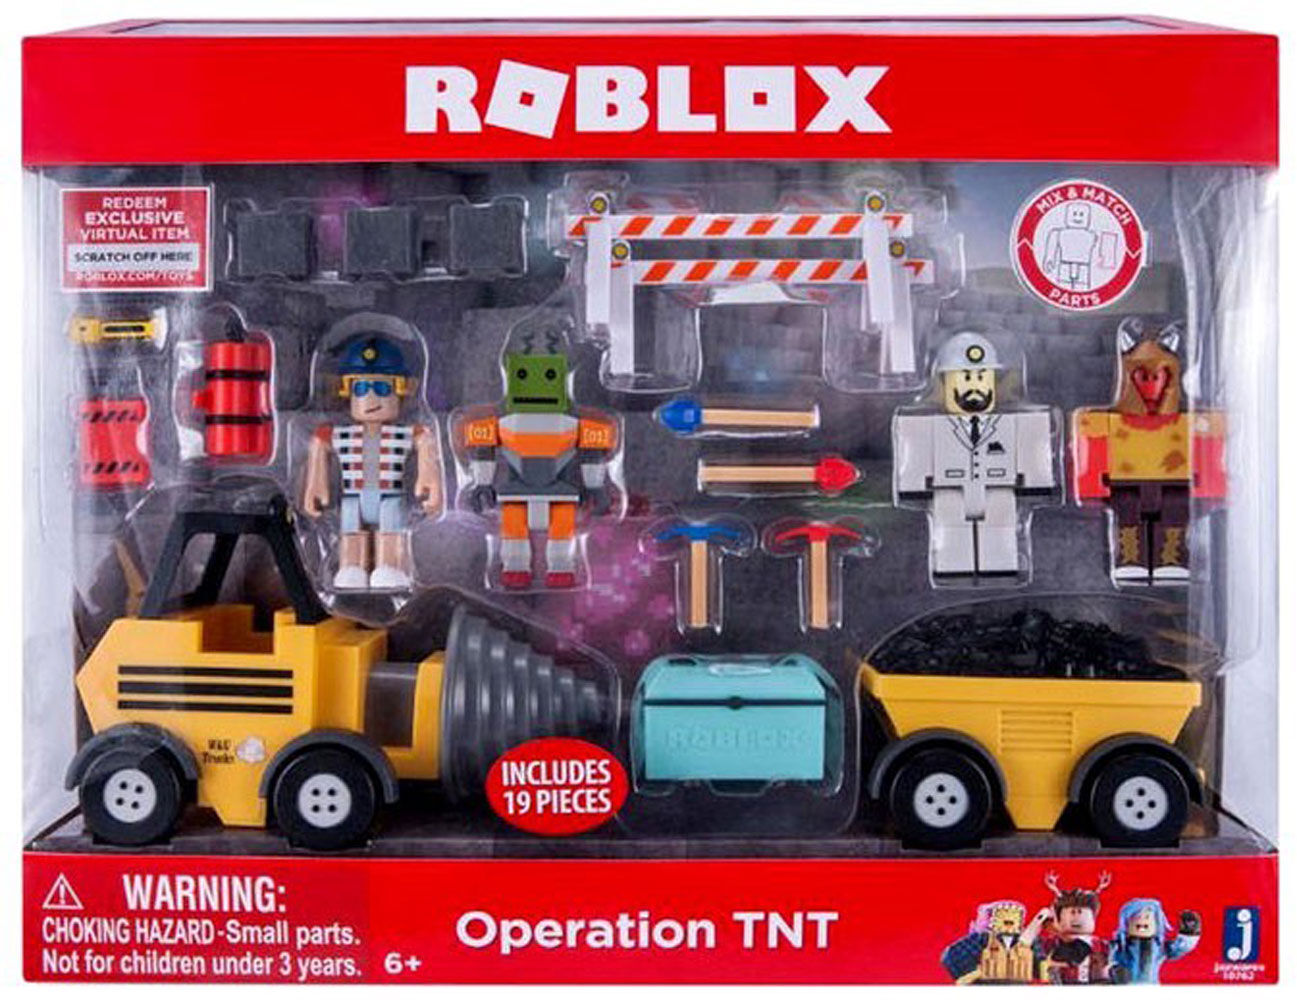 Roblox Toys Toys R Us - roblox toys at toys r us